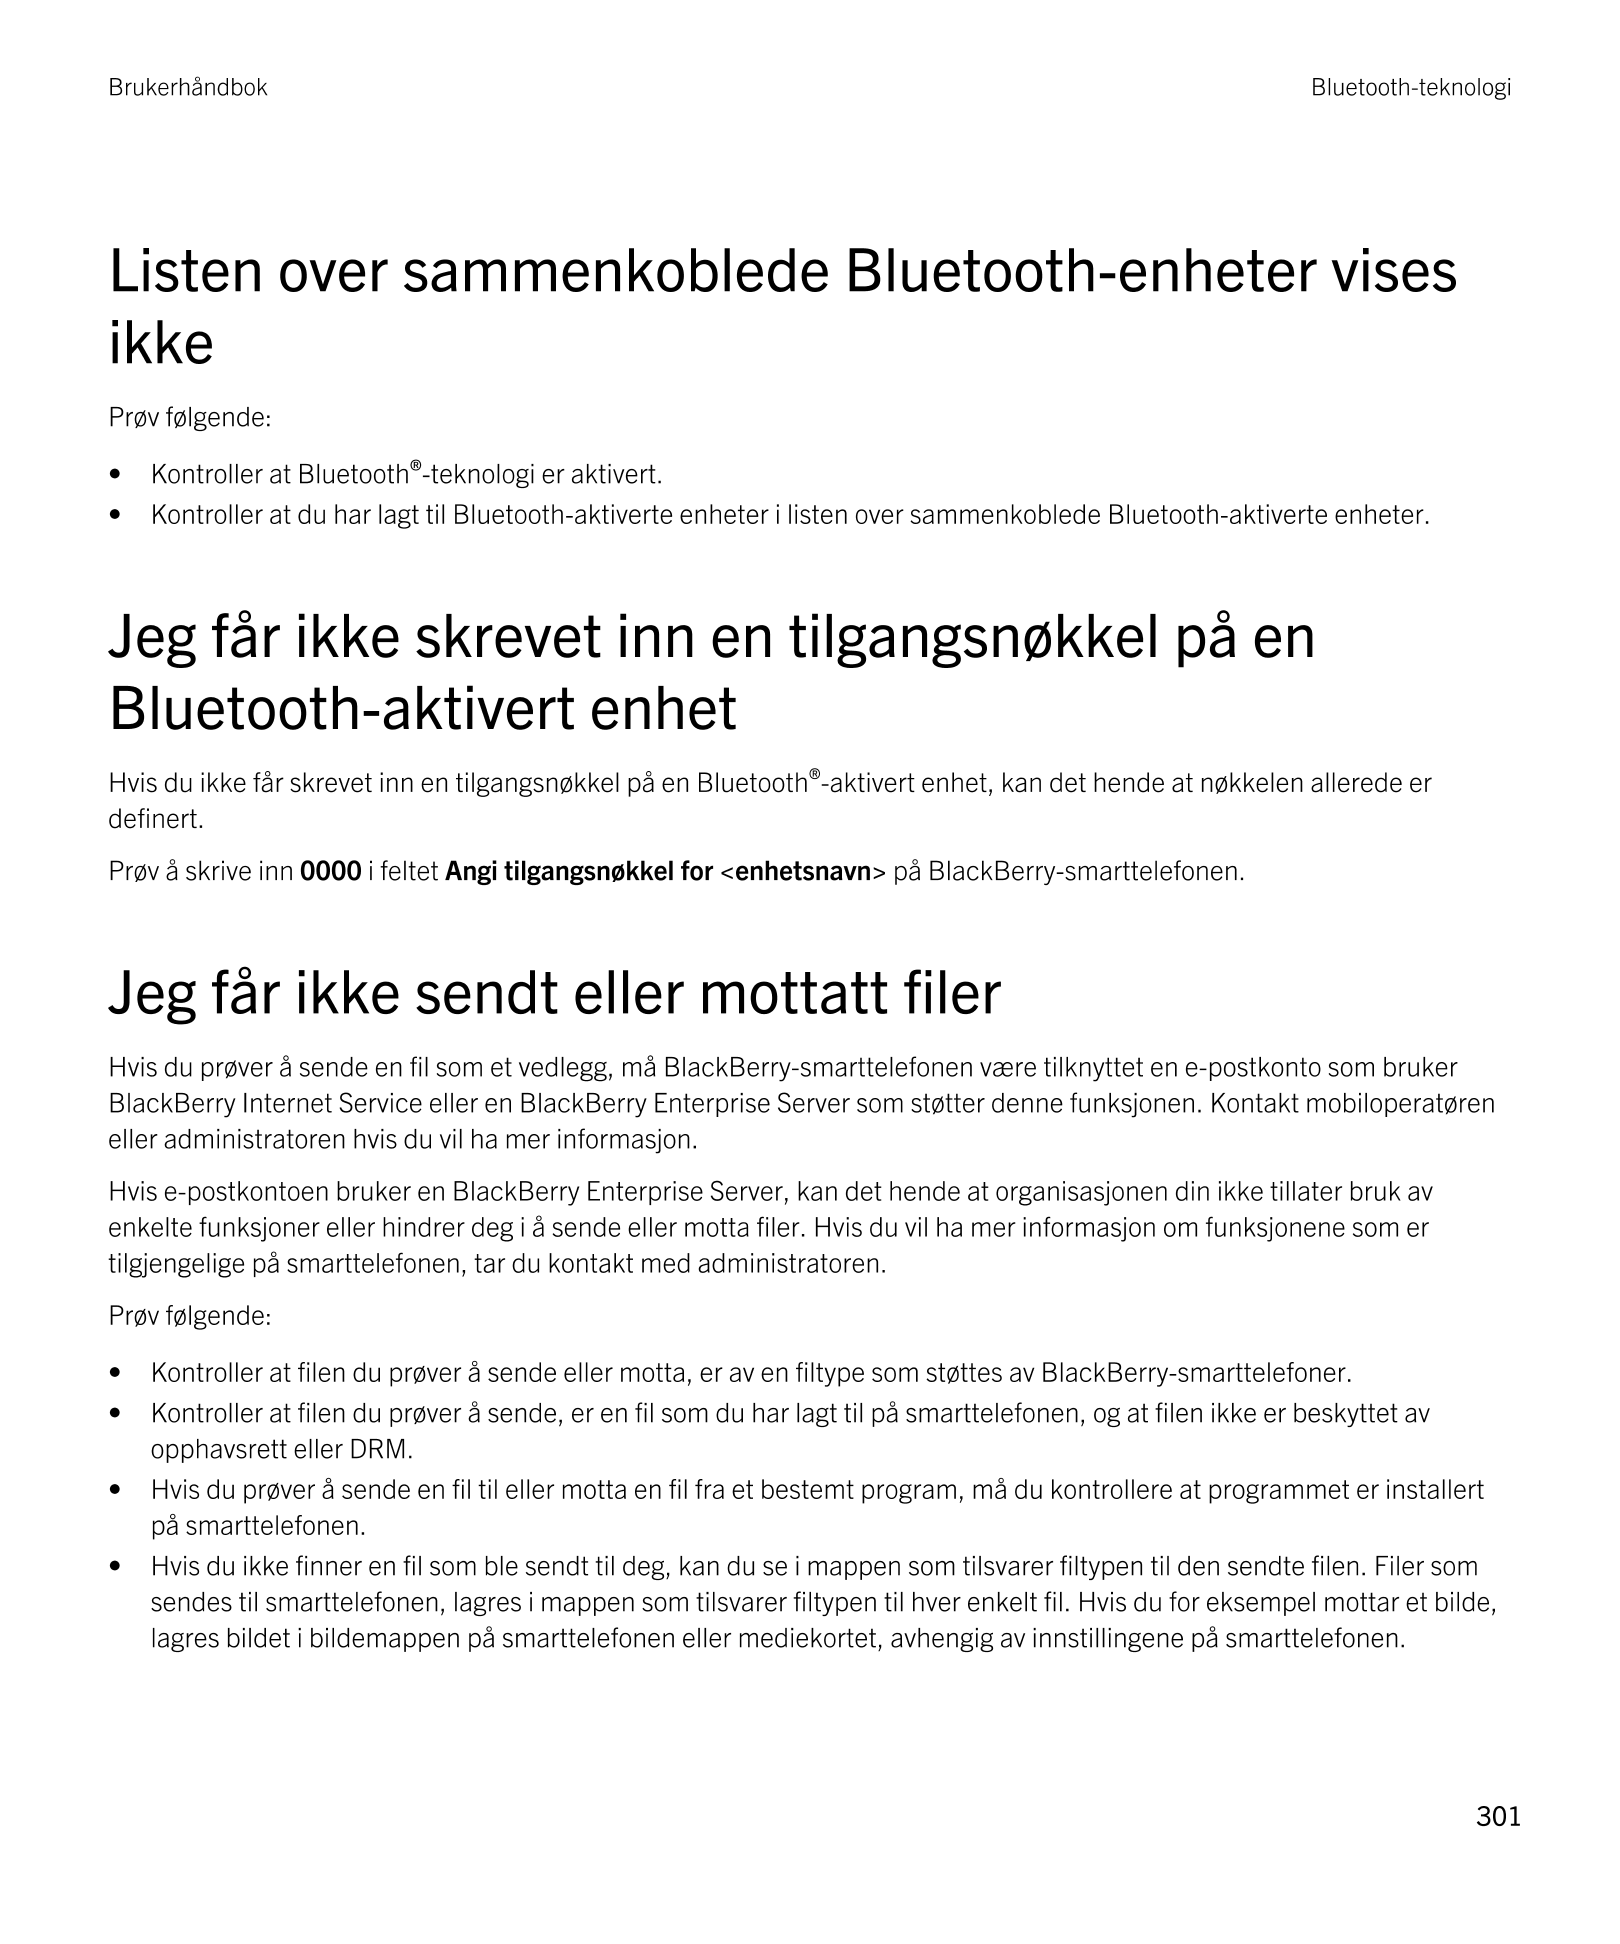 Brukerhåndbok Bluetooth-teknologi
Listen over sammenkoblede  Bluetooth-enheter vises 
ikke
Prøv følgende:
• Kontroller at  Bluet